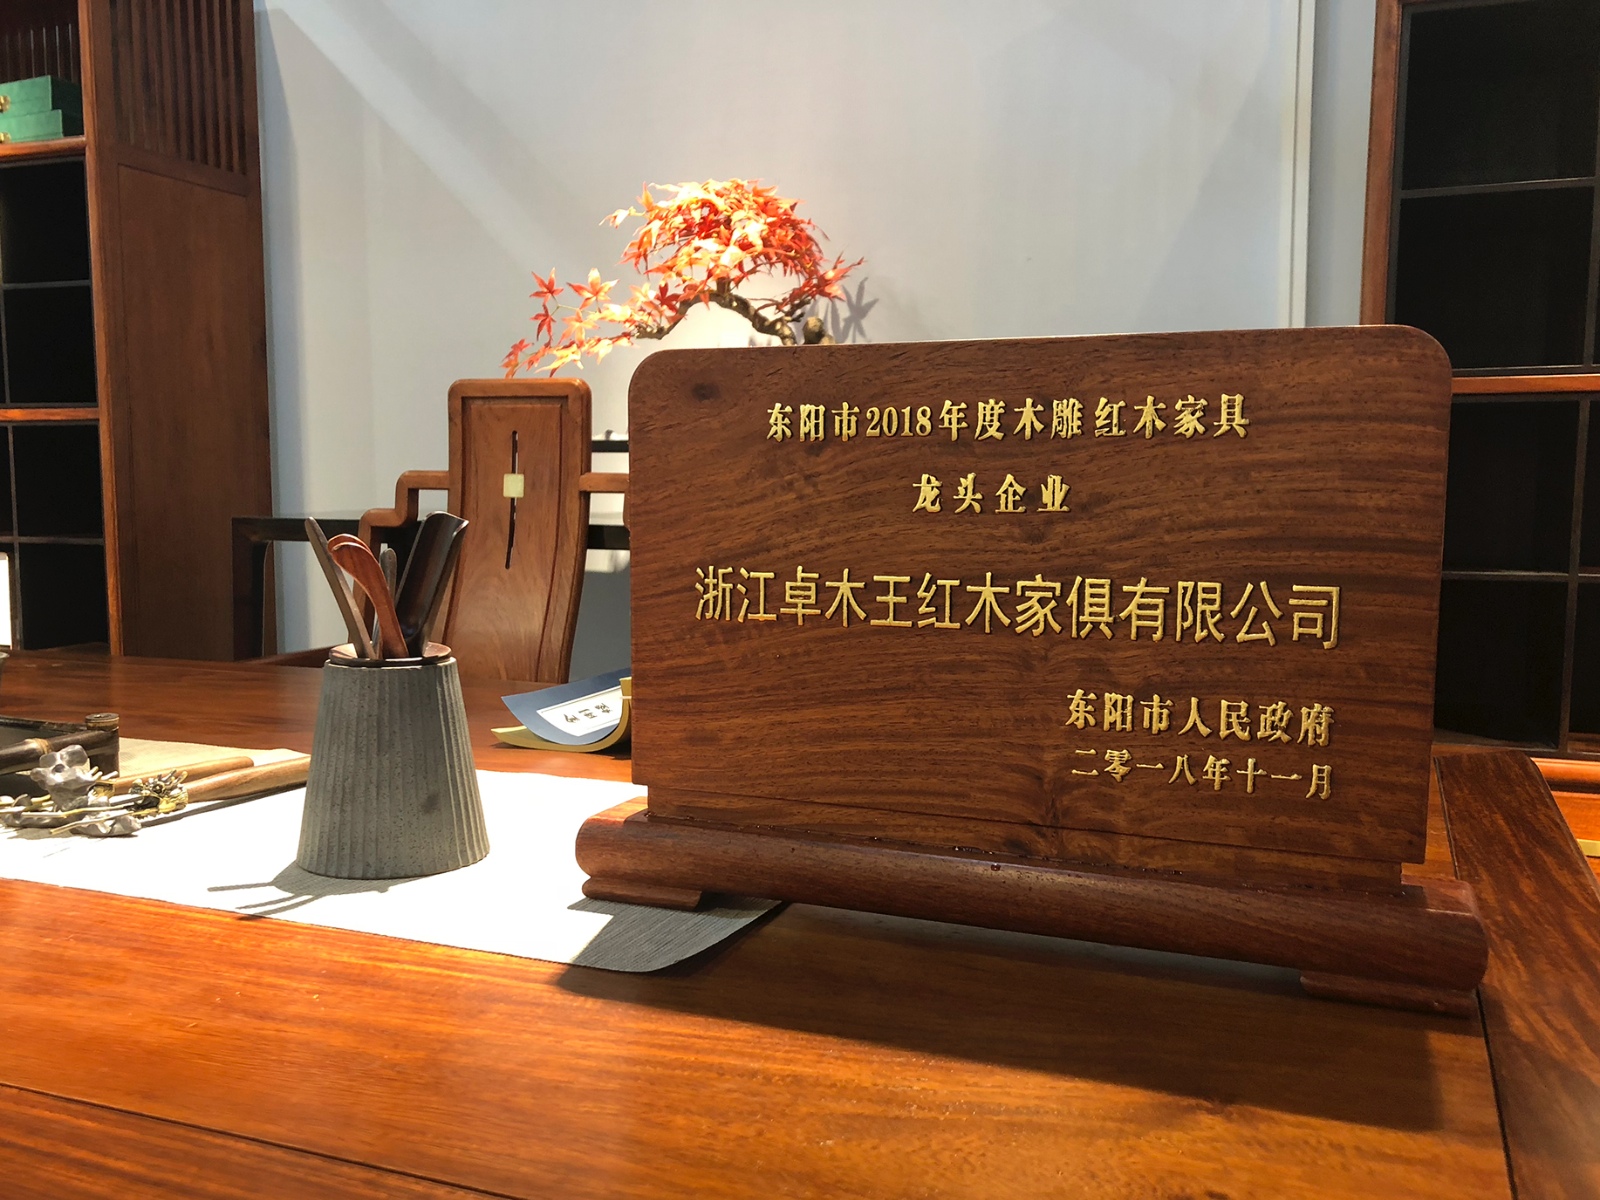 卓木王获2018年浙江省优秀企业、东阳市龙头企业殊荣